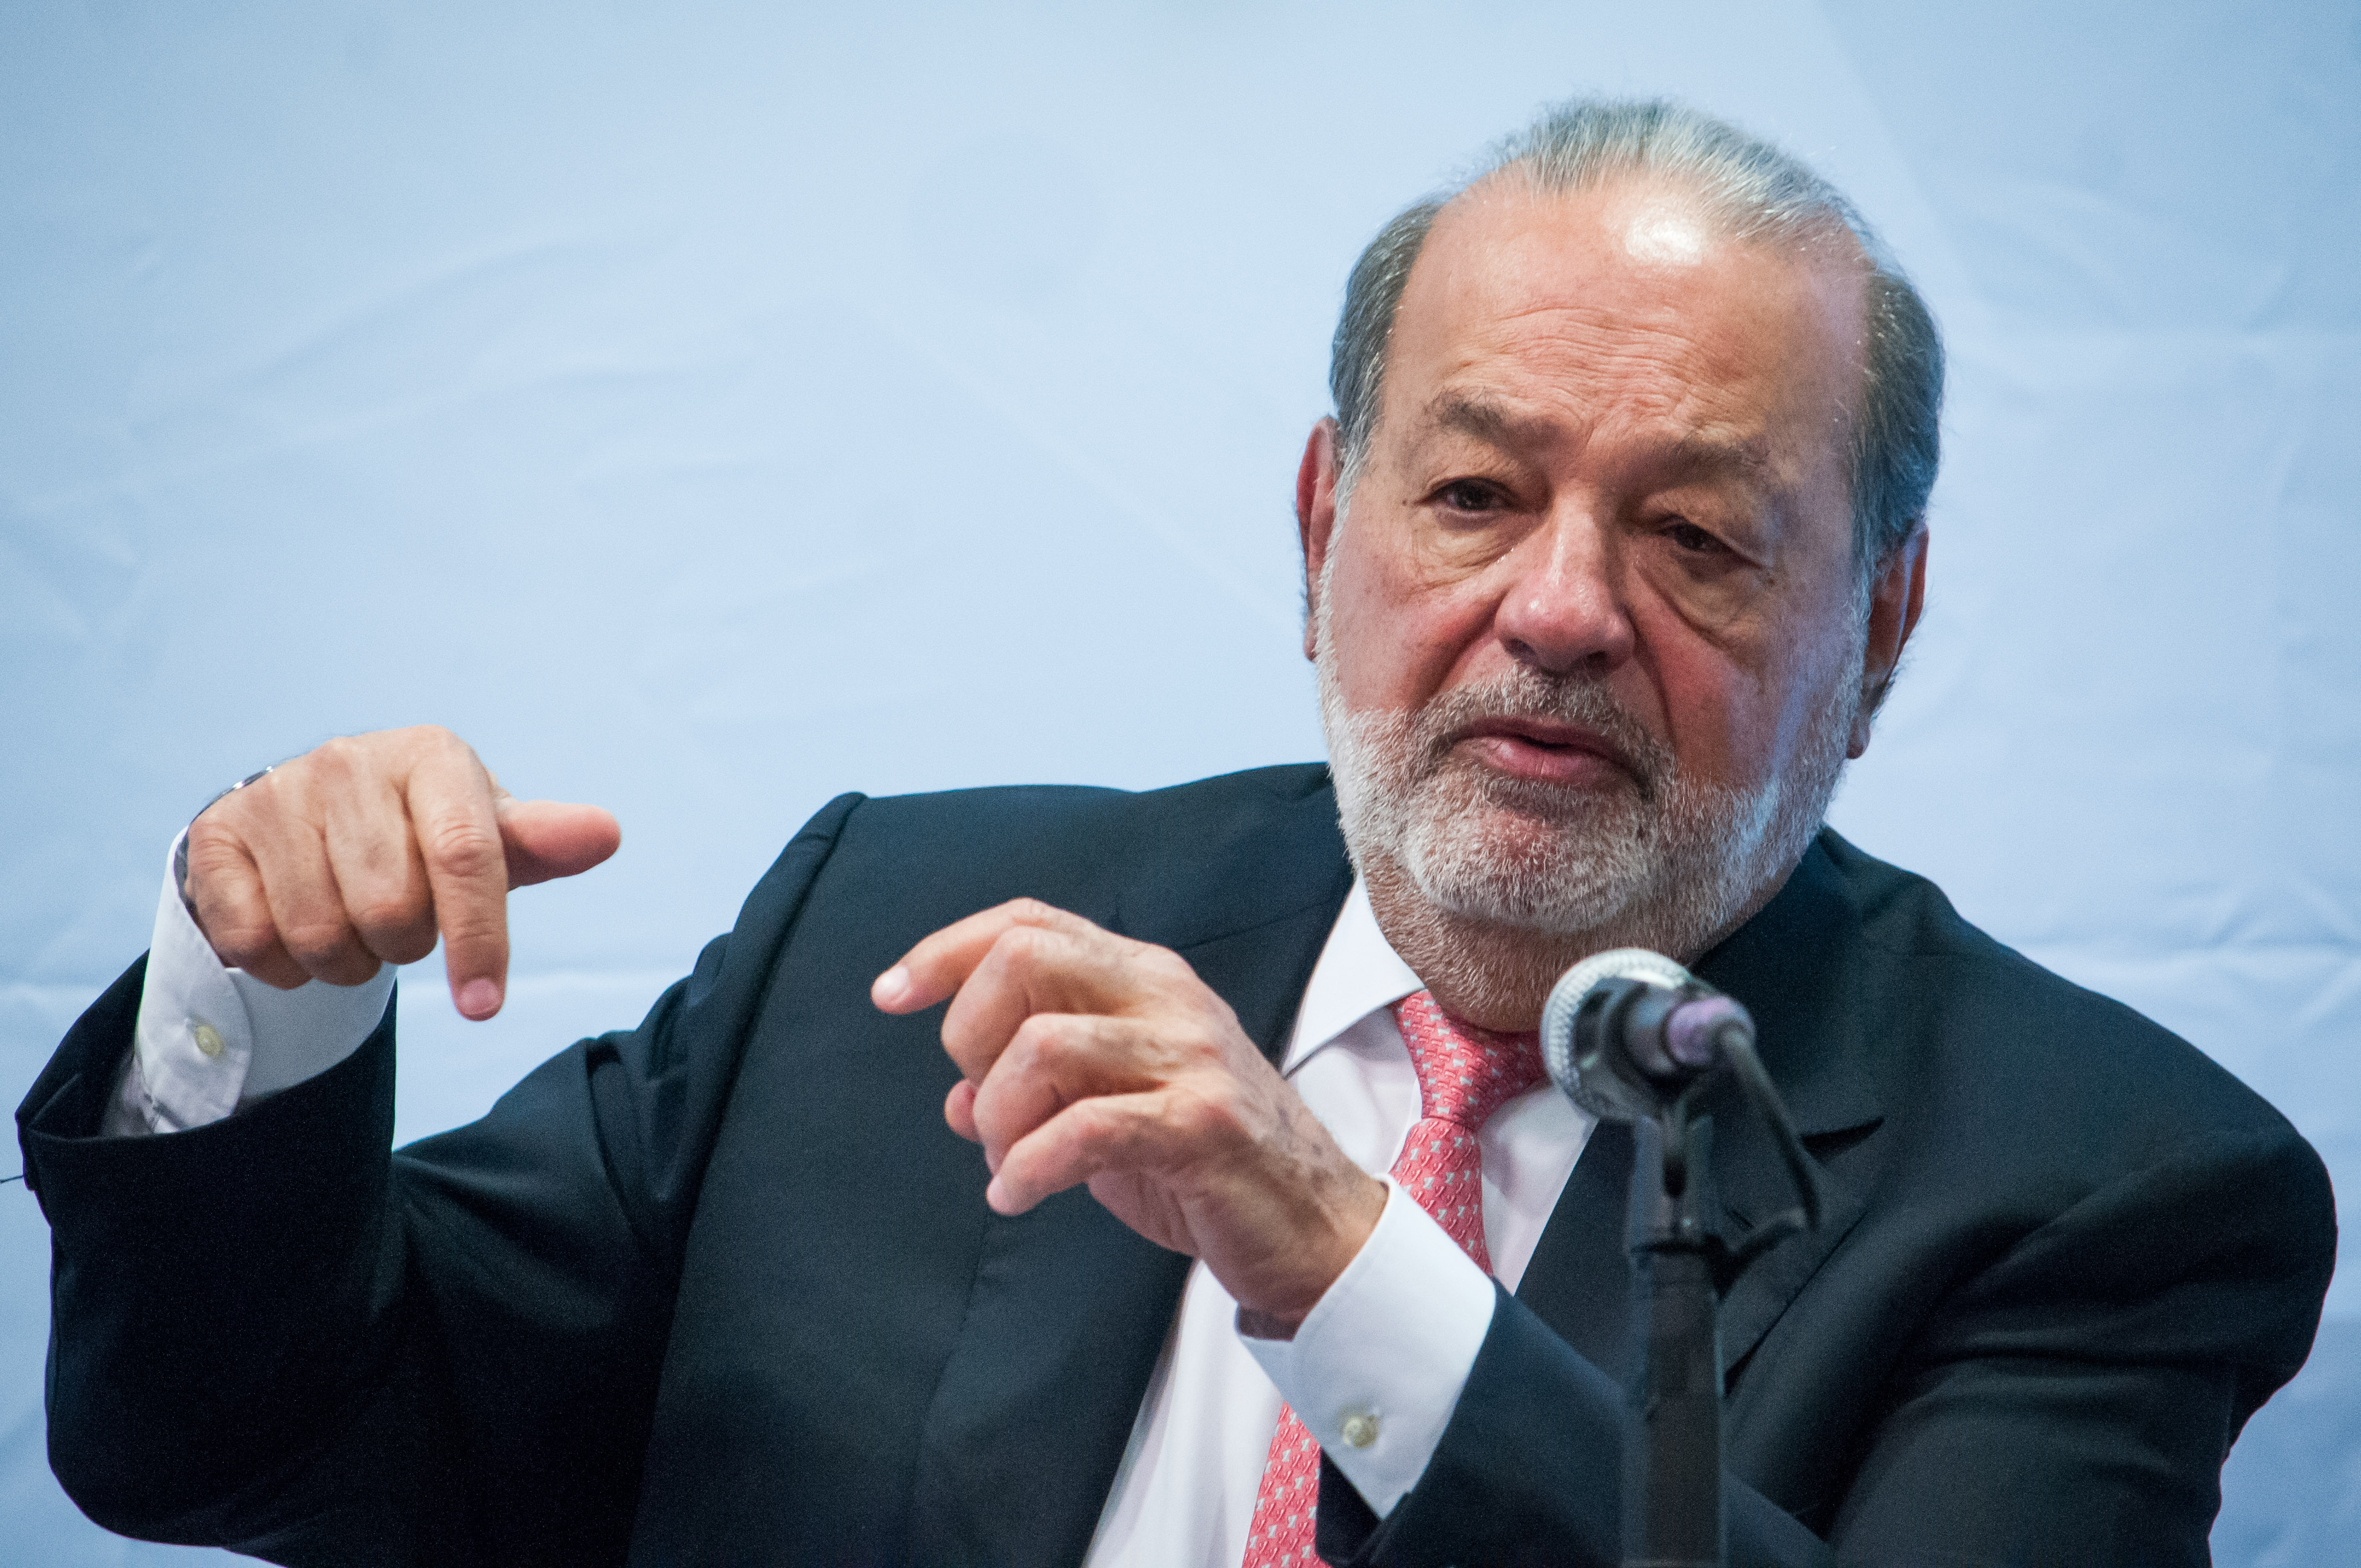 Carlos Slim está entre los implicados